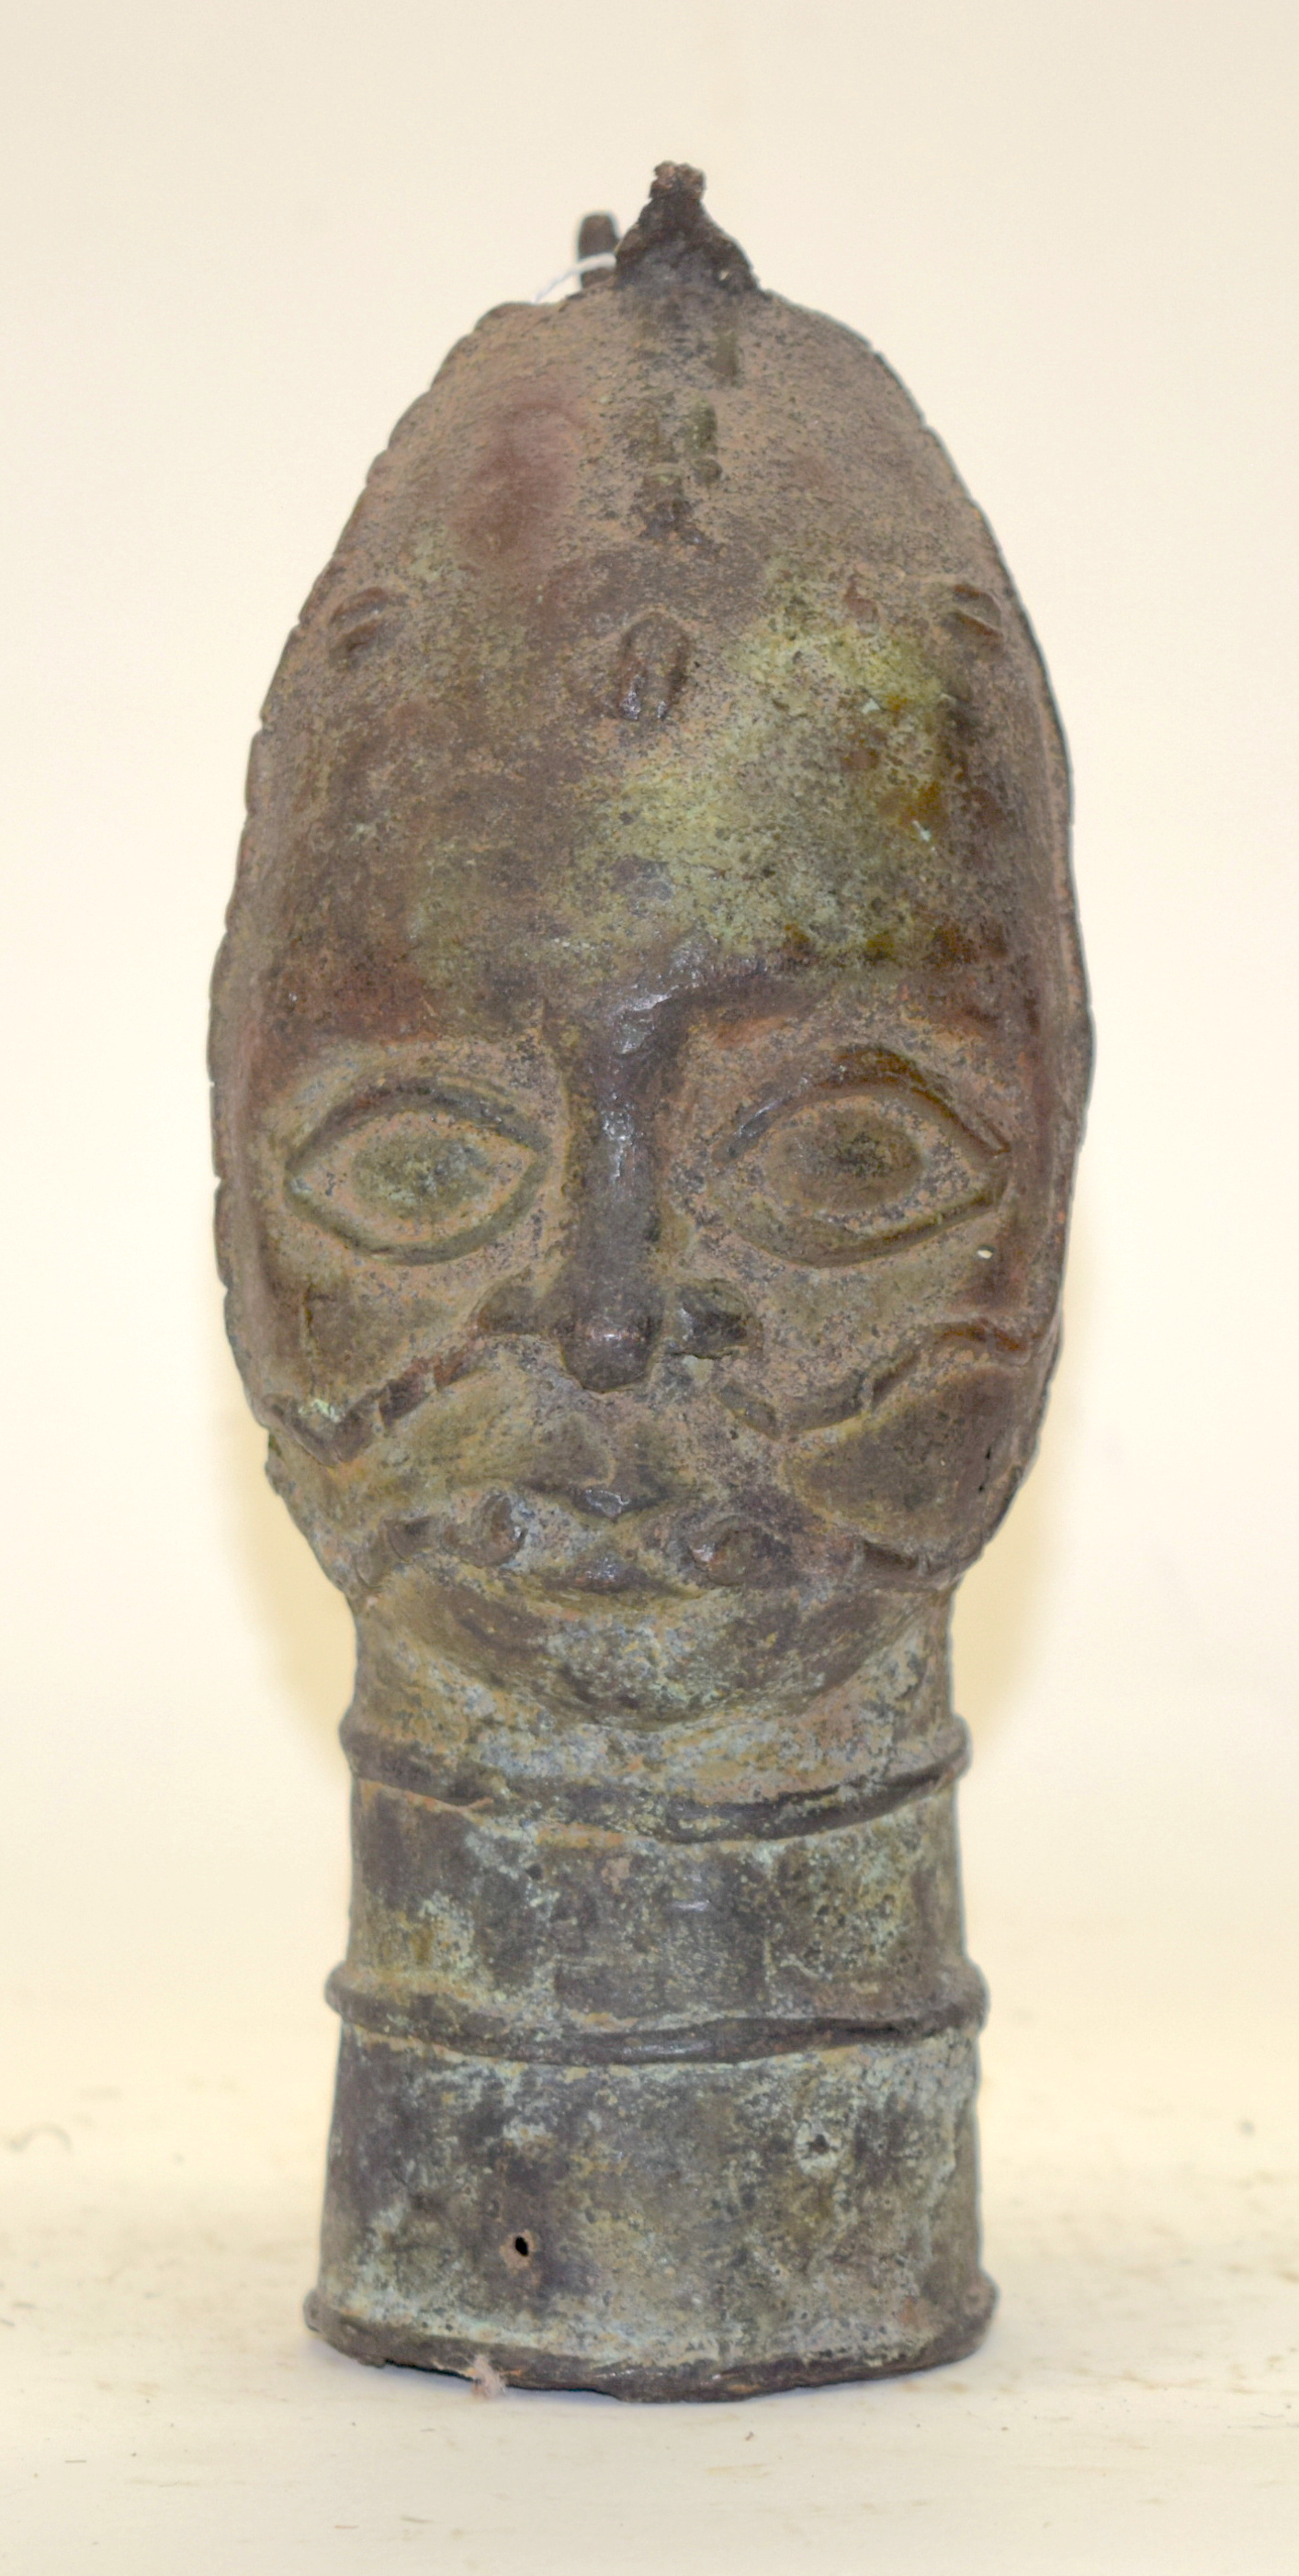 A TRIBAL BRONZE (POSSIBLY BENIN) HEAD. Nigeria. 9cm x 10cm x 24cm